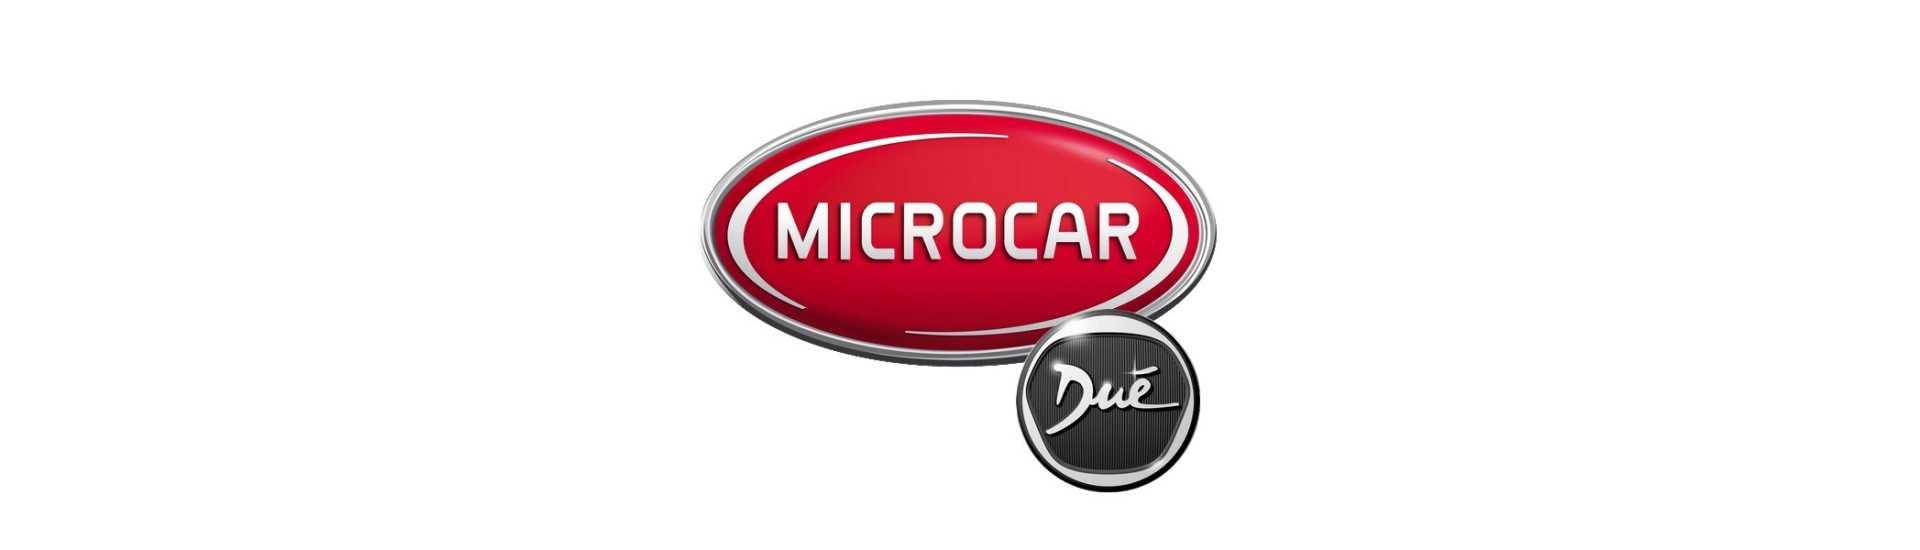 Anti dimma till bästa pris för bil utan tillstånd Microcar Dué